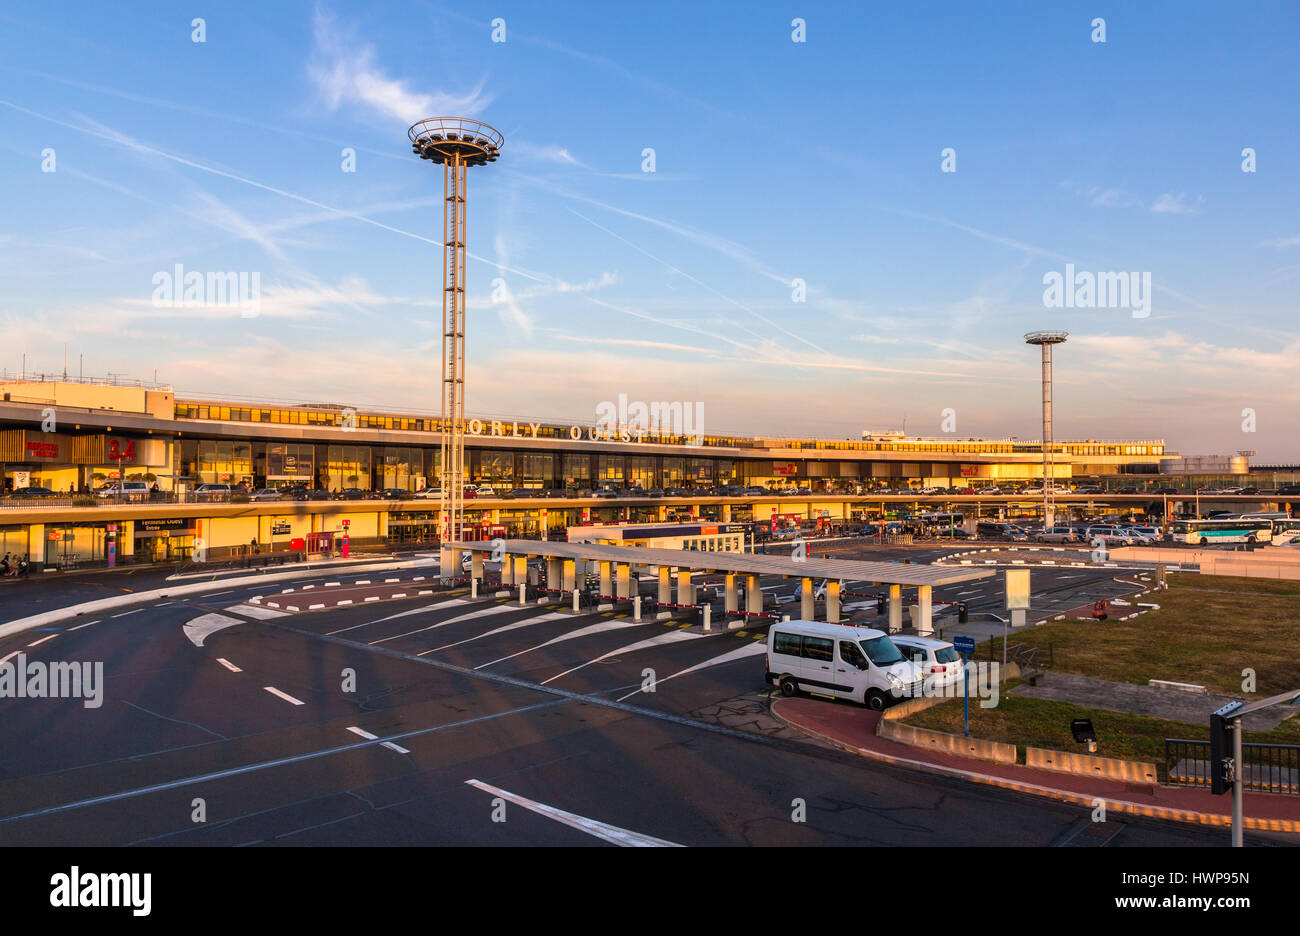 PARIS, FRANCE - 4 octobre : terminal de l'ouest de l'aéroport de Paris-Orly à Paris le 4 octobre 2014. Orly est le deuxième aéroport français avec 28 274 154 passagers servis en 2013 Banque D'Images